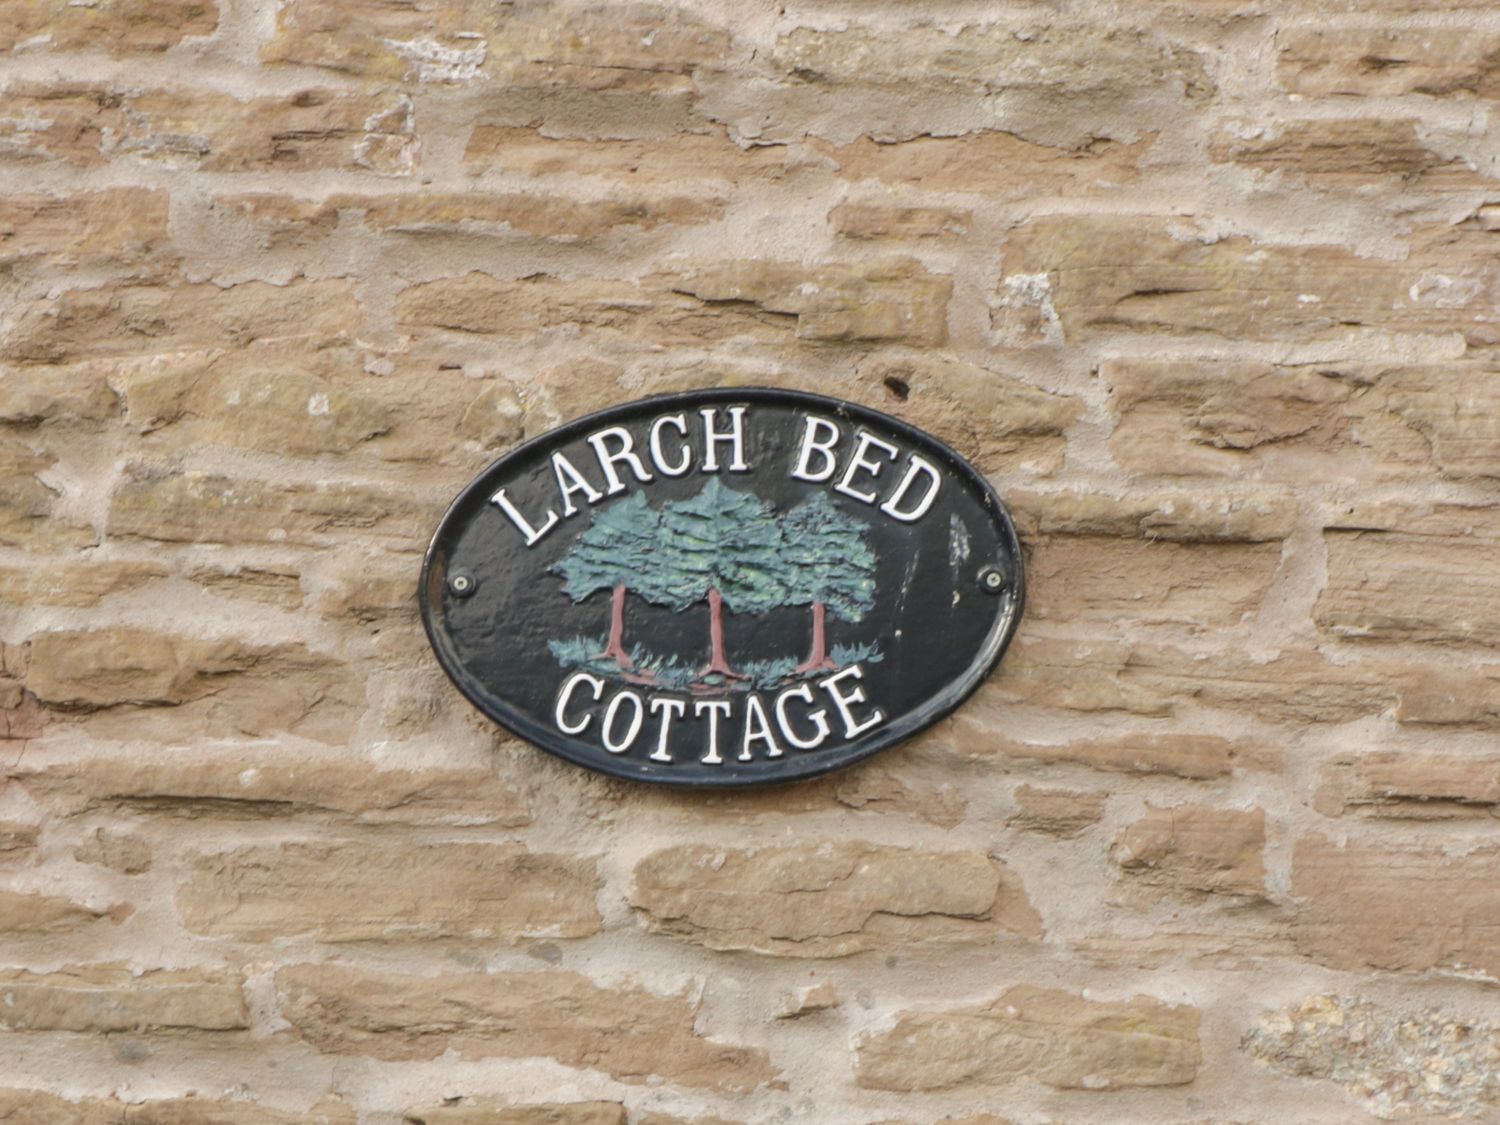 Larch Bed Cottage, Bromyard